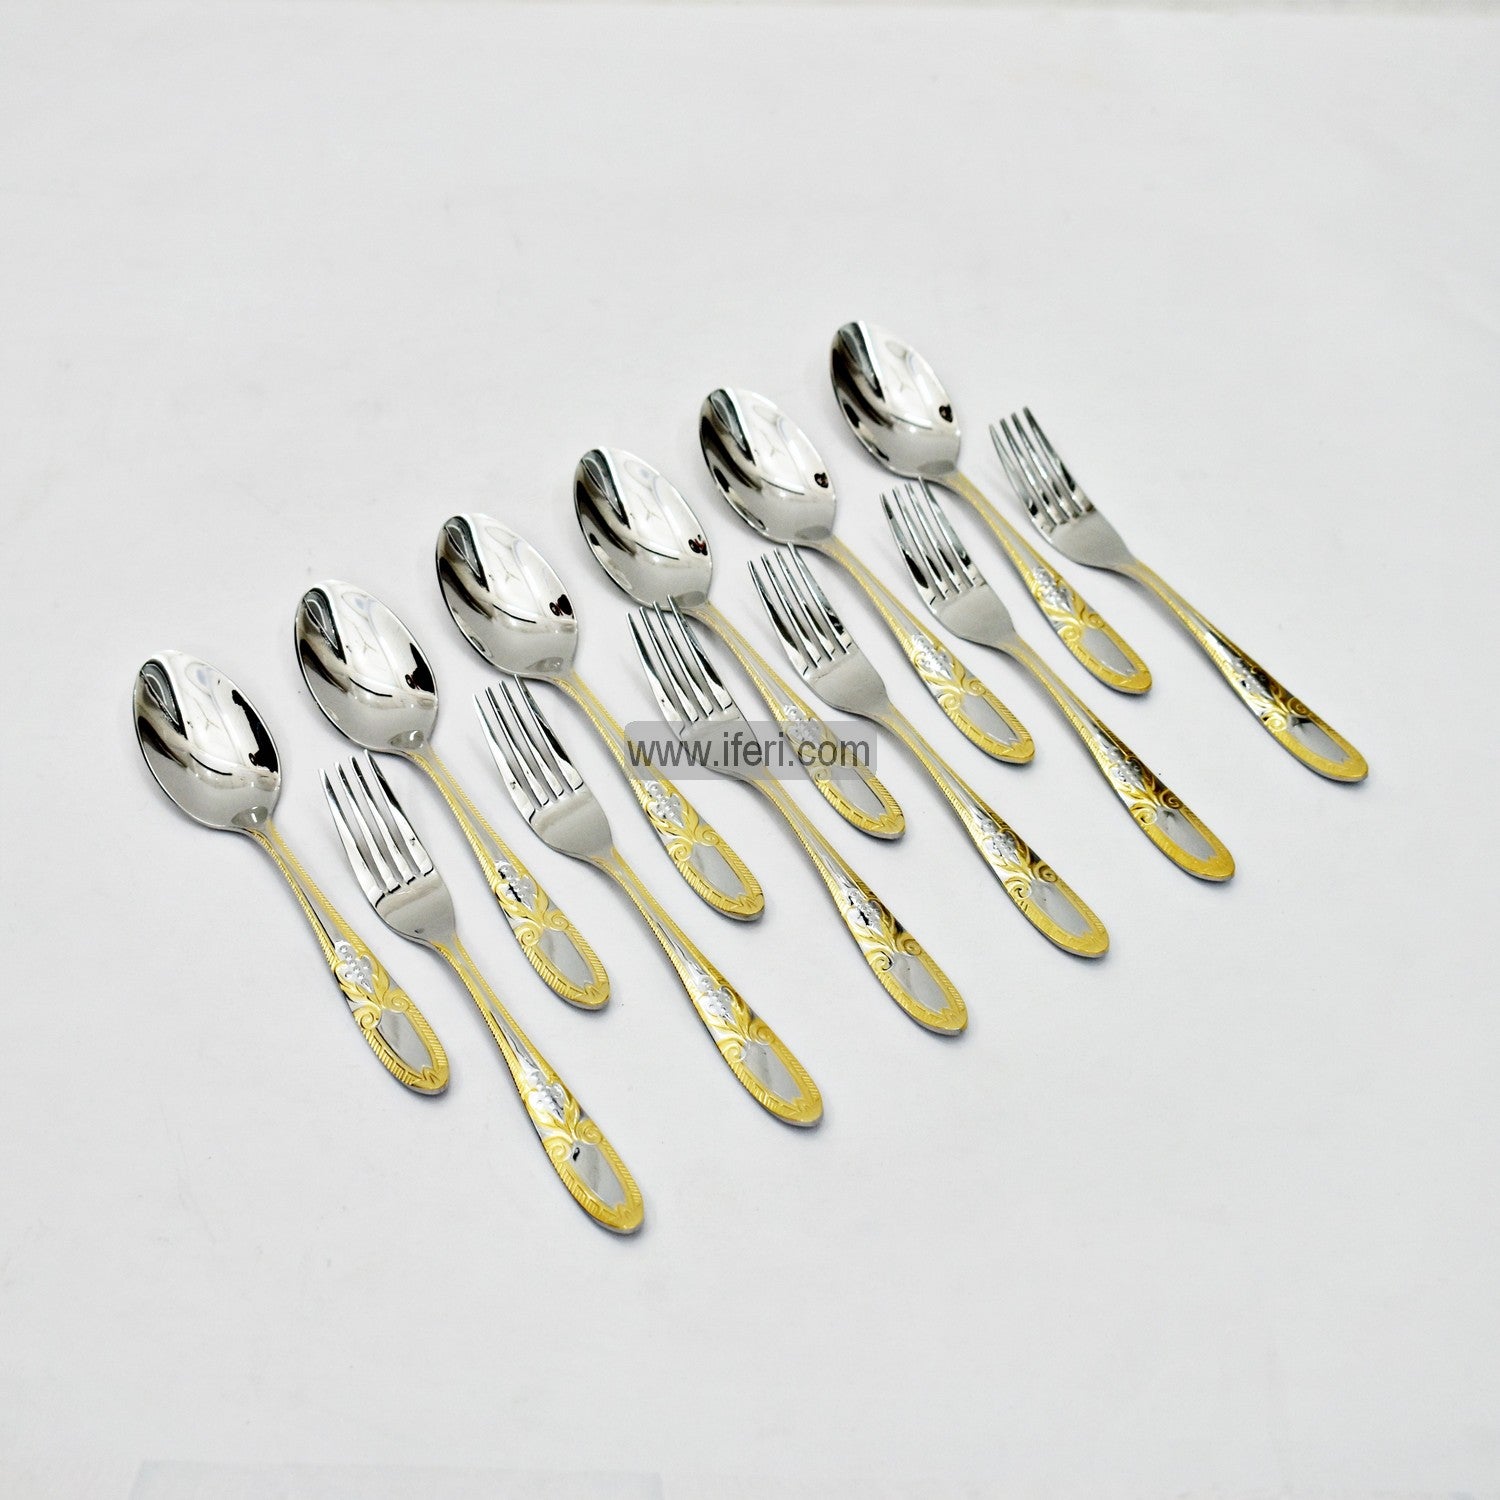 12 Pcs Stainless Steel Tea Spoon & Fork Set EB21197